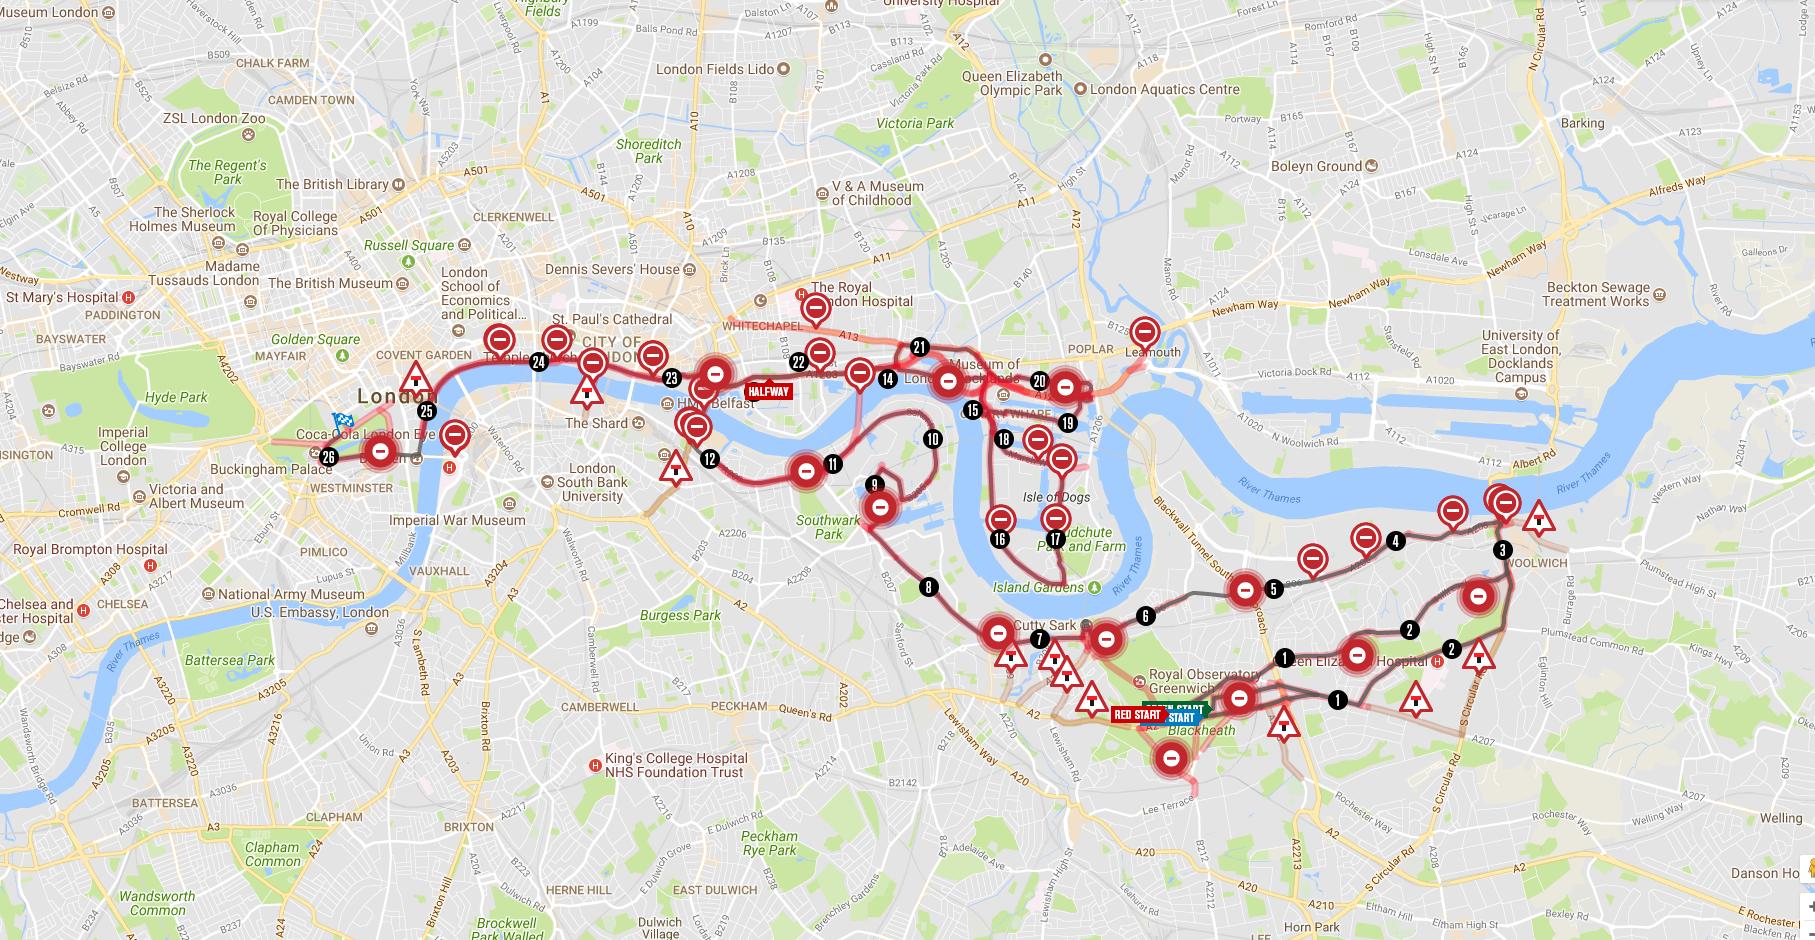 London Marathon road closures